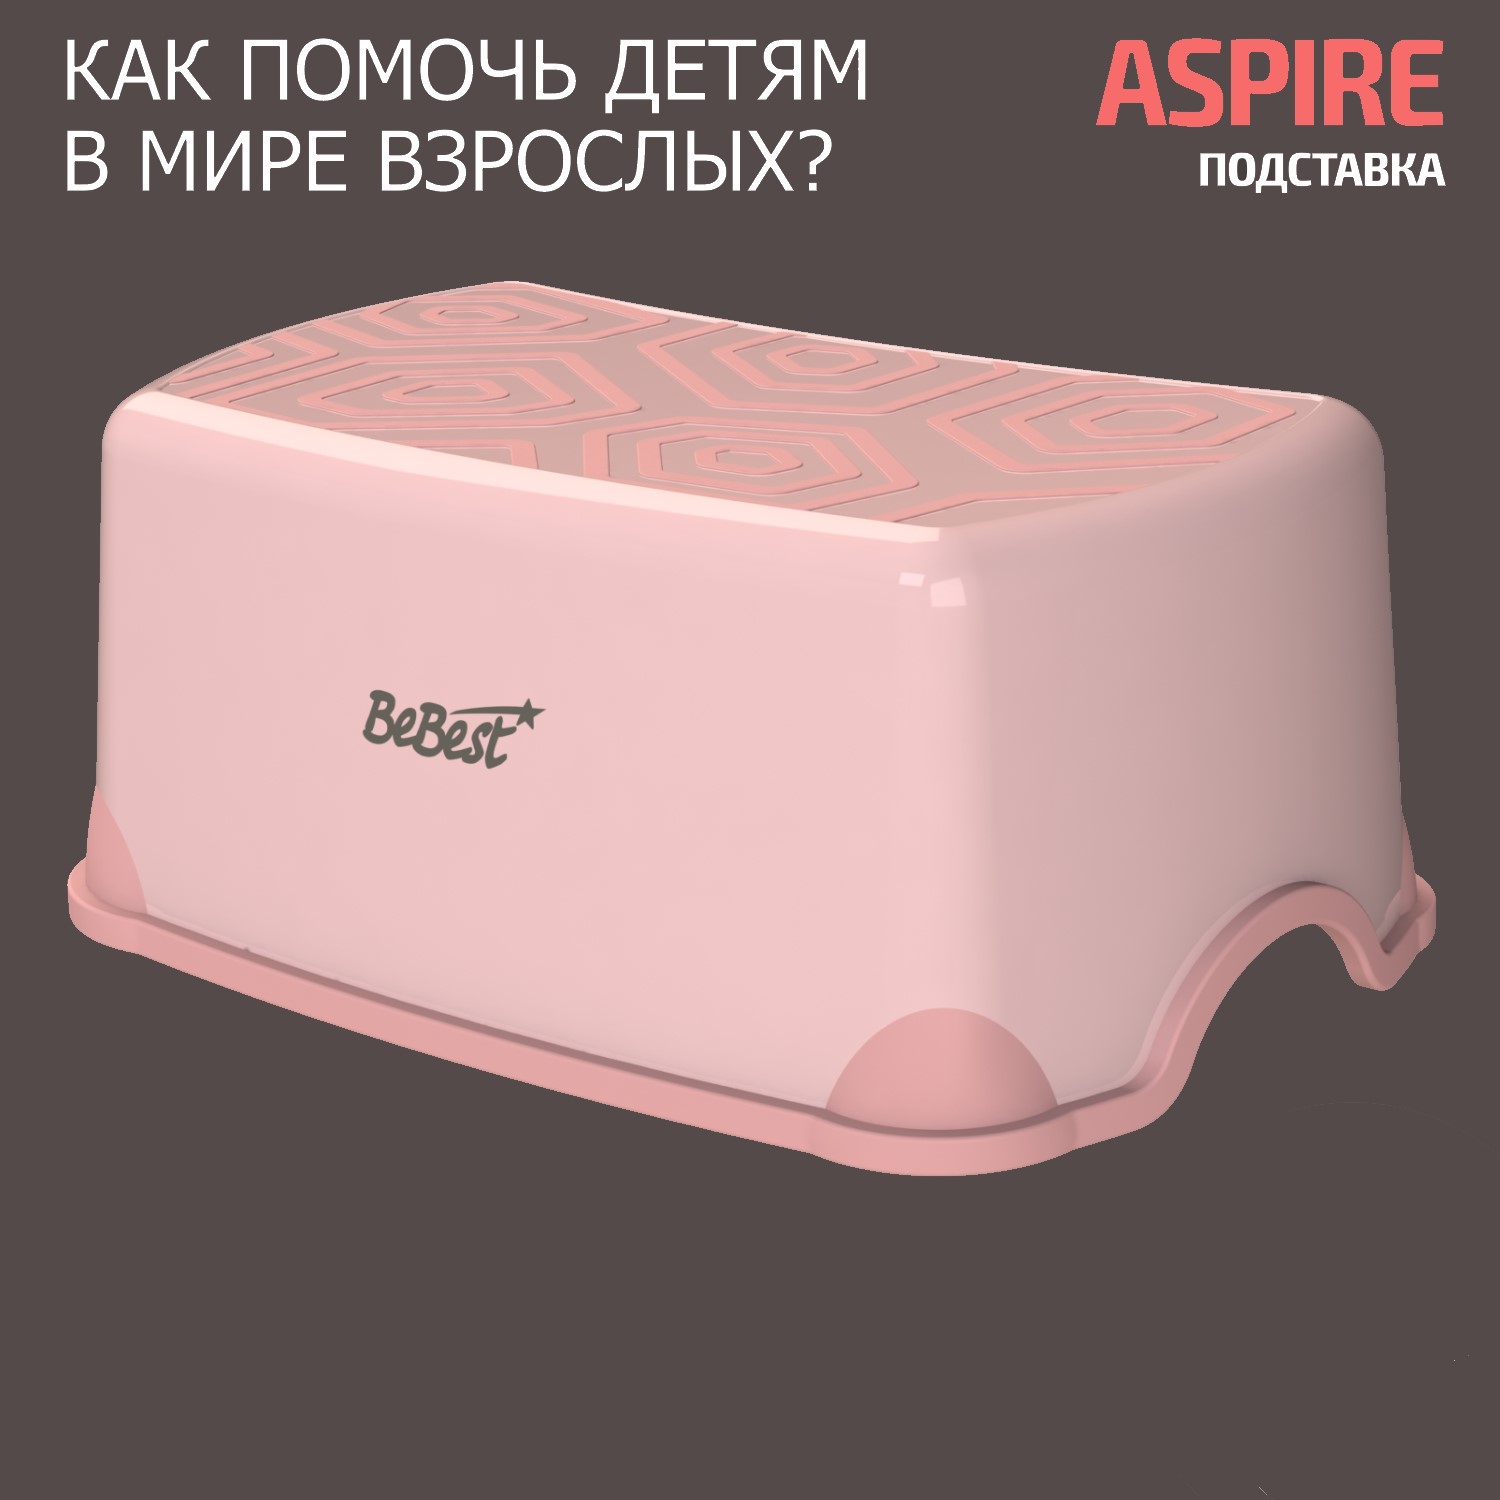 Подставка-табурет для детей BeBest Aspire розовый mitsubishi galant legnum aspire